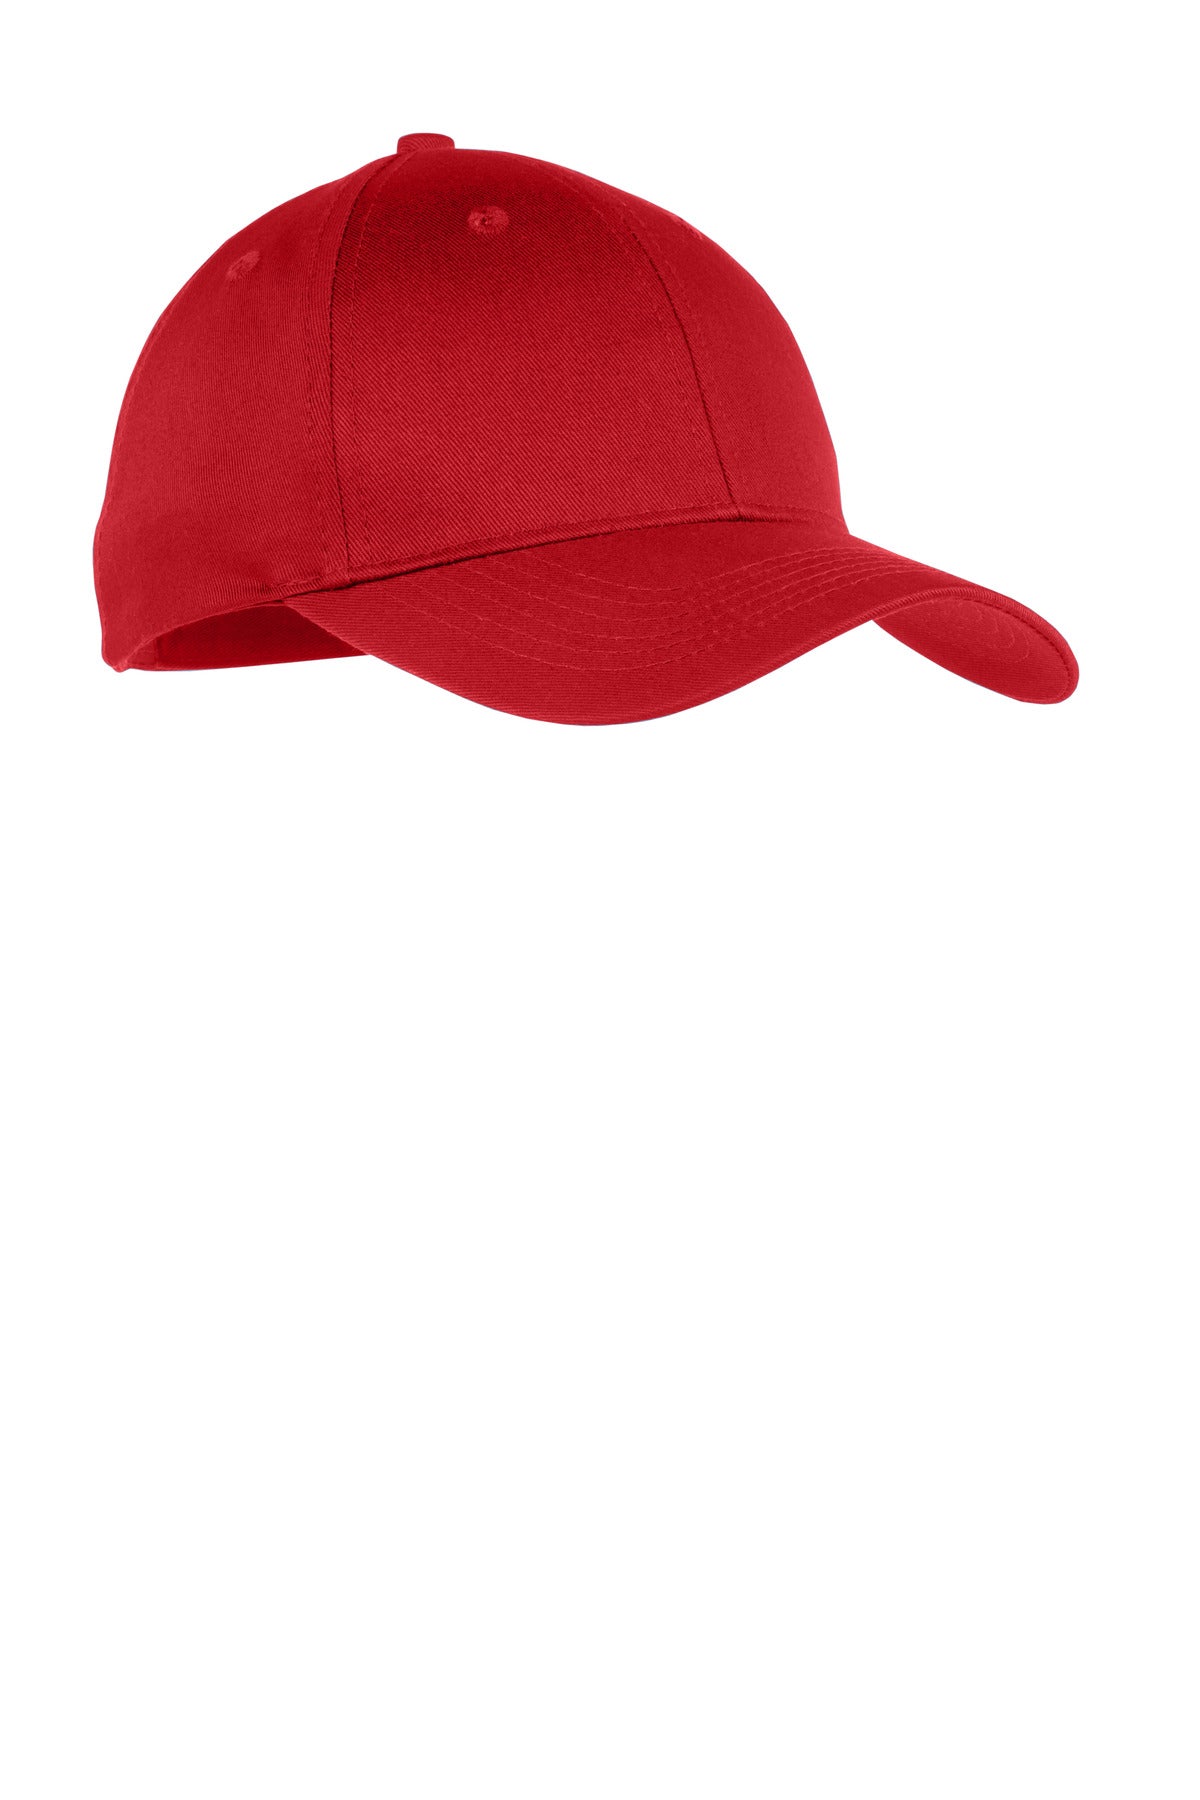 Caps True Red OSFA Port & Company